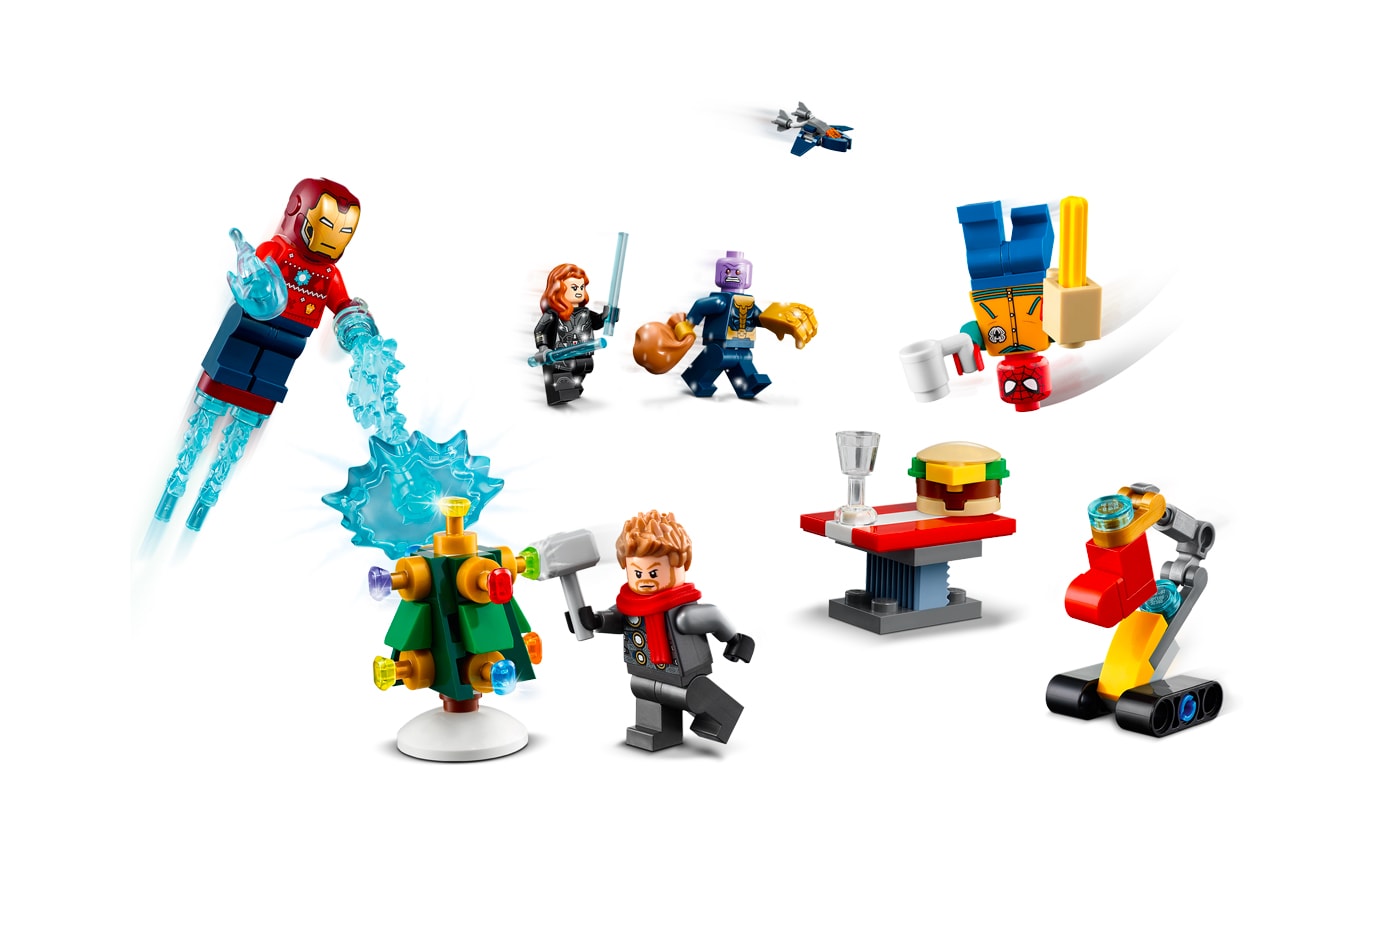 レゴ®が『アベンジャーズ』シリーズのアドベントカレンダーを発表 Marvel LEGO The Avengers Advent Calendar release Iron Man Spider-Man Black Widow Thor Captain Marvel Thanos Nick Fury toys 